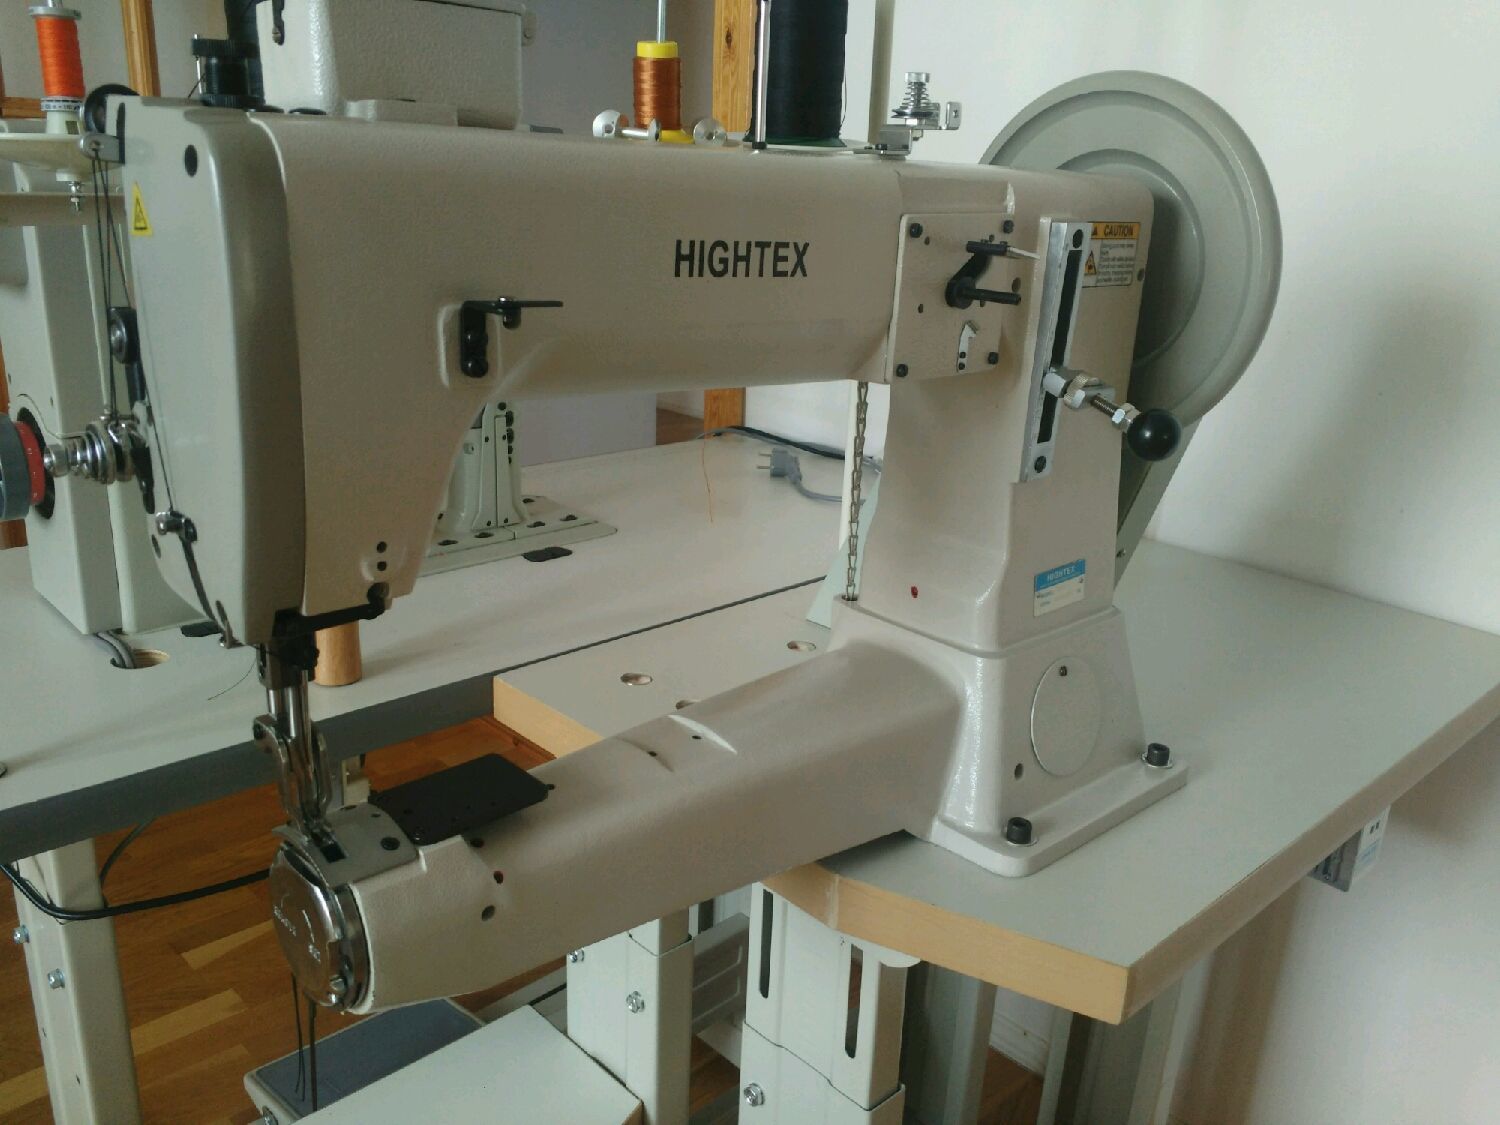 промышленная швейная машинка для мебели